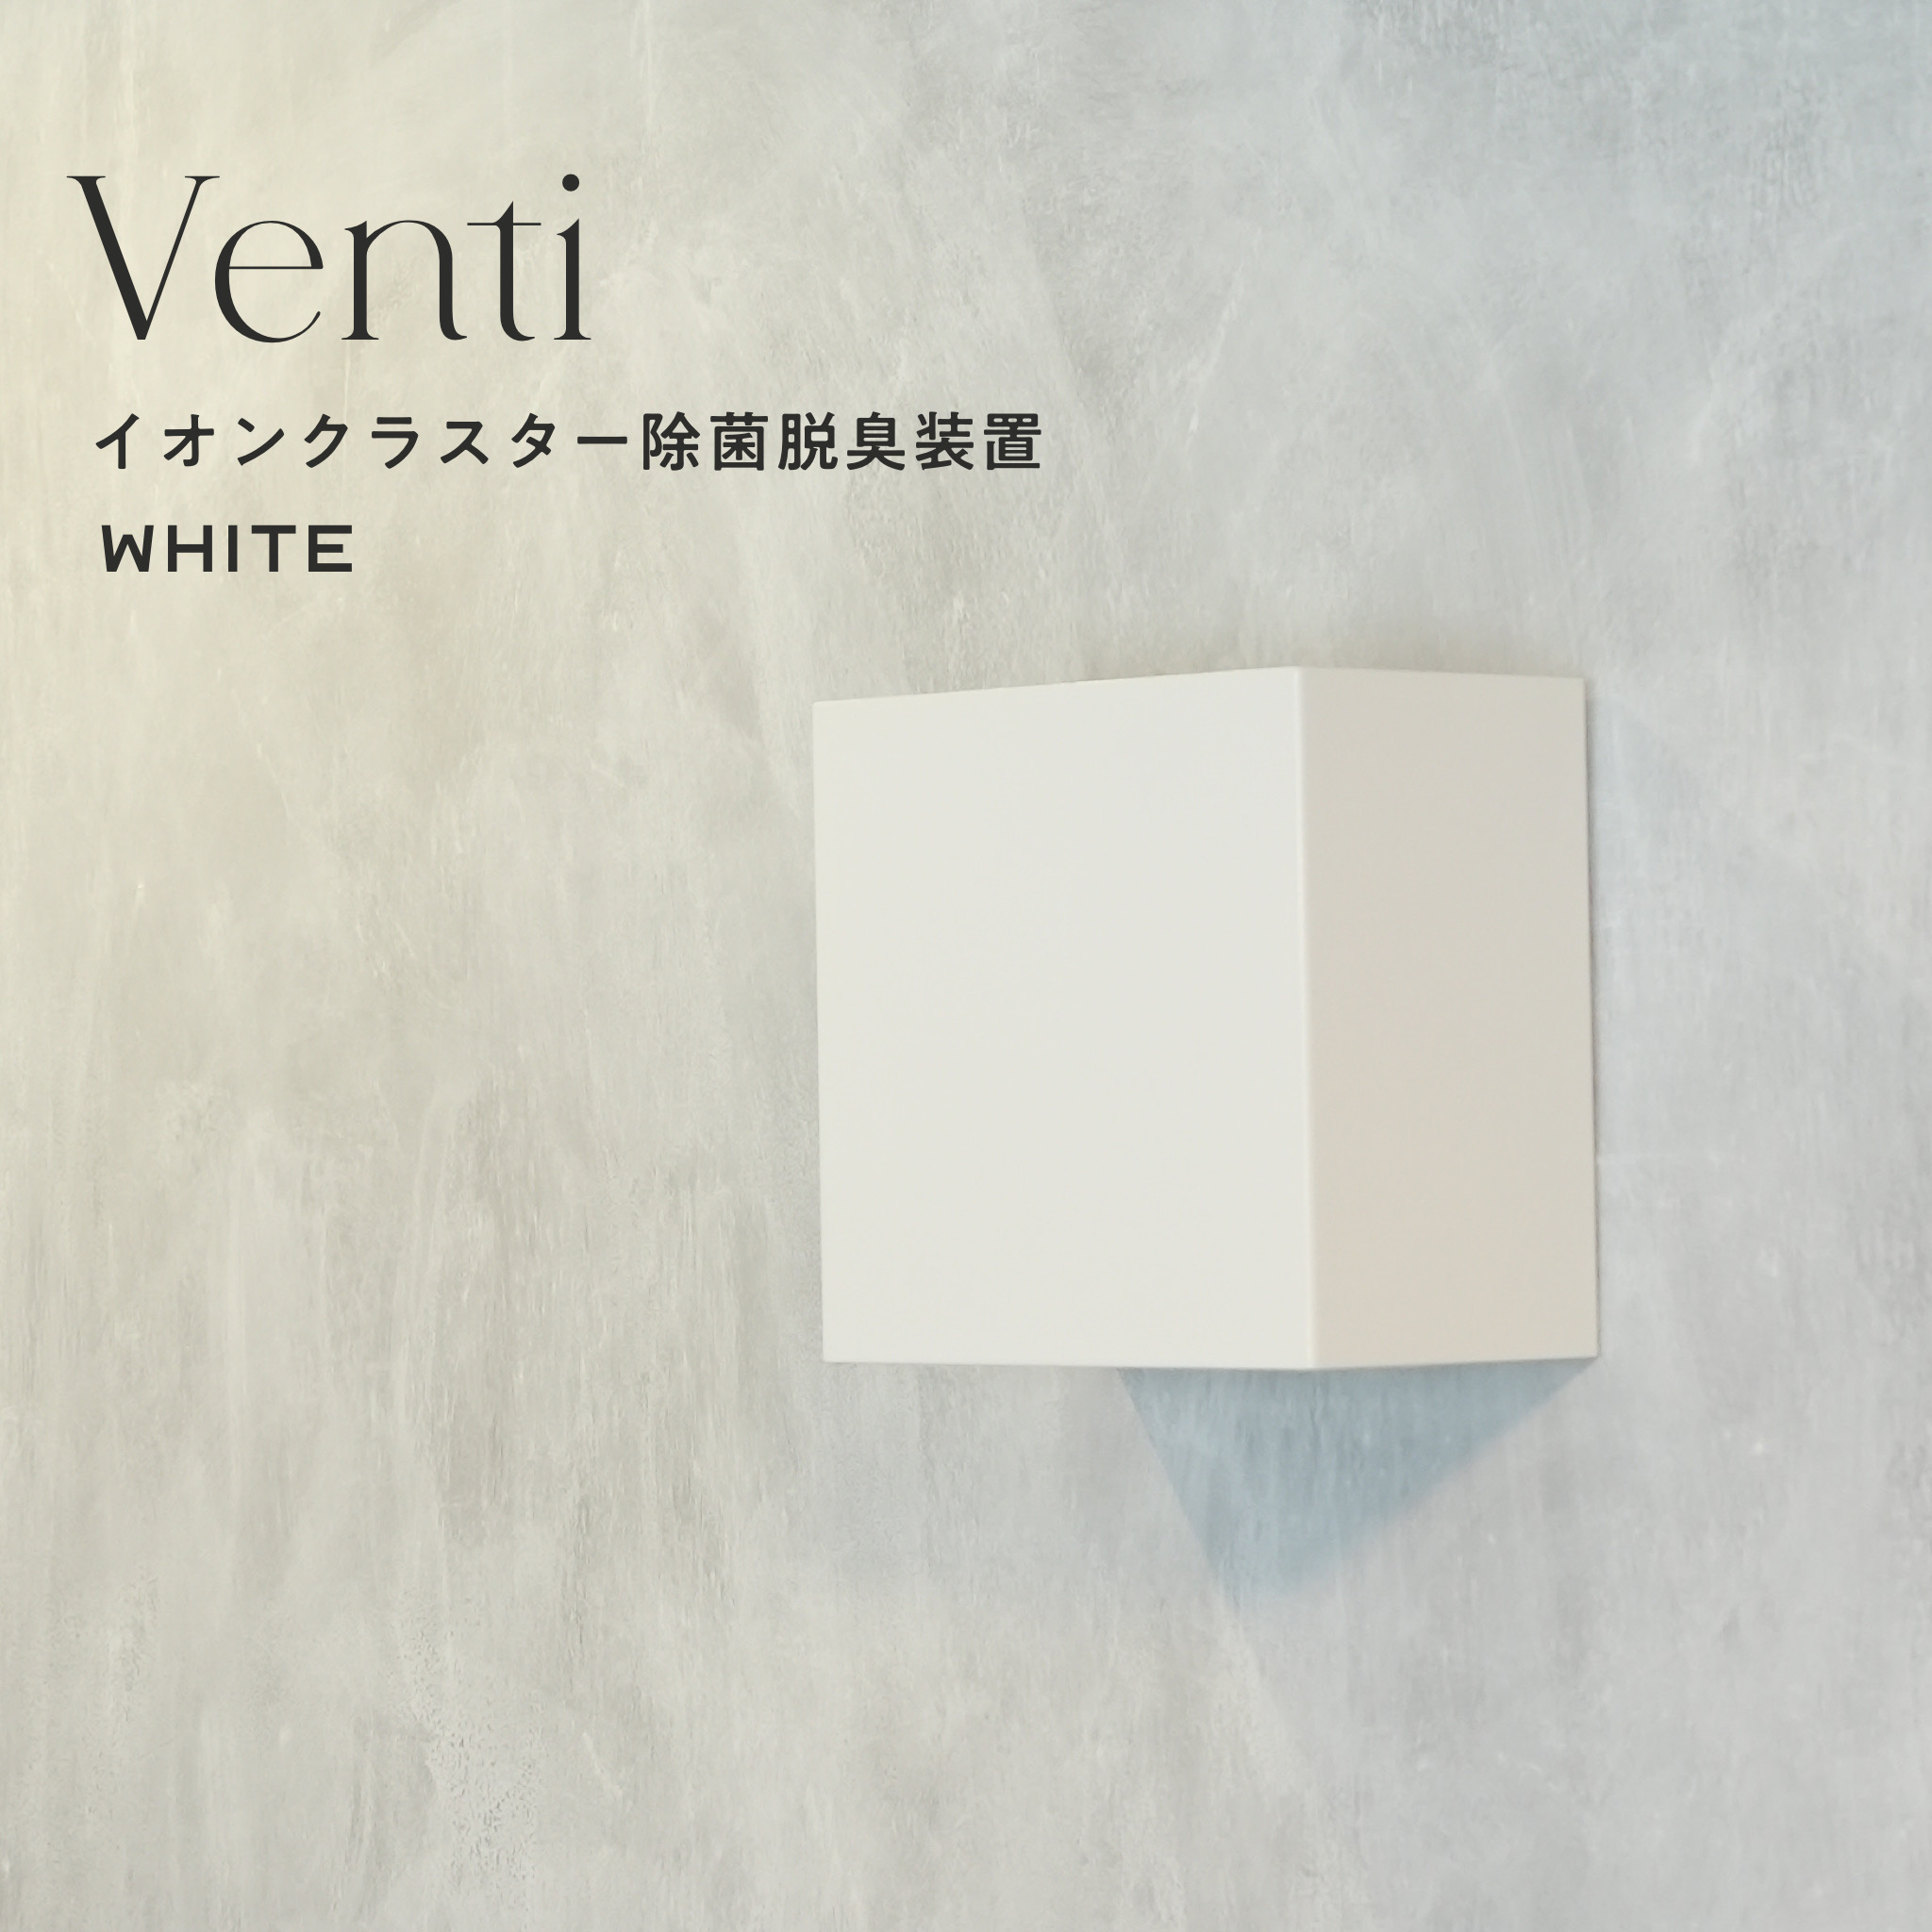 壁掛け型イオンクラスター除菌脱臭装置“Venti” WHITE